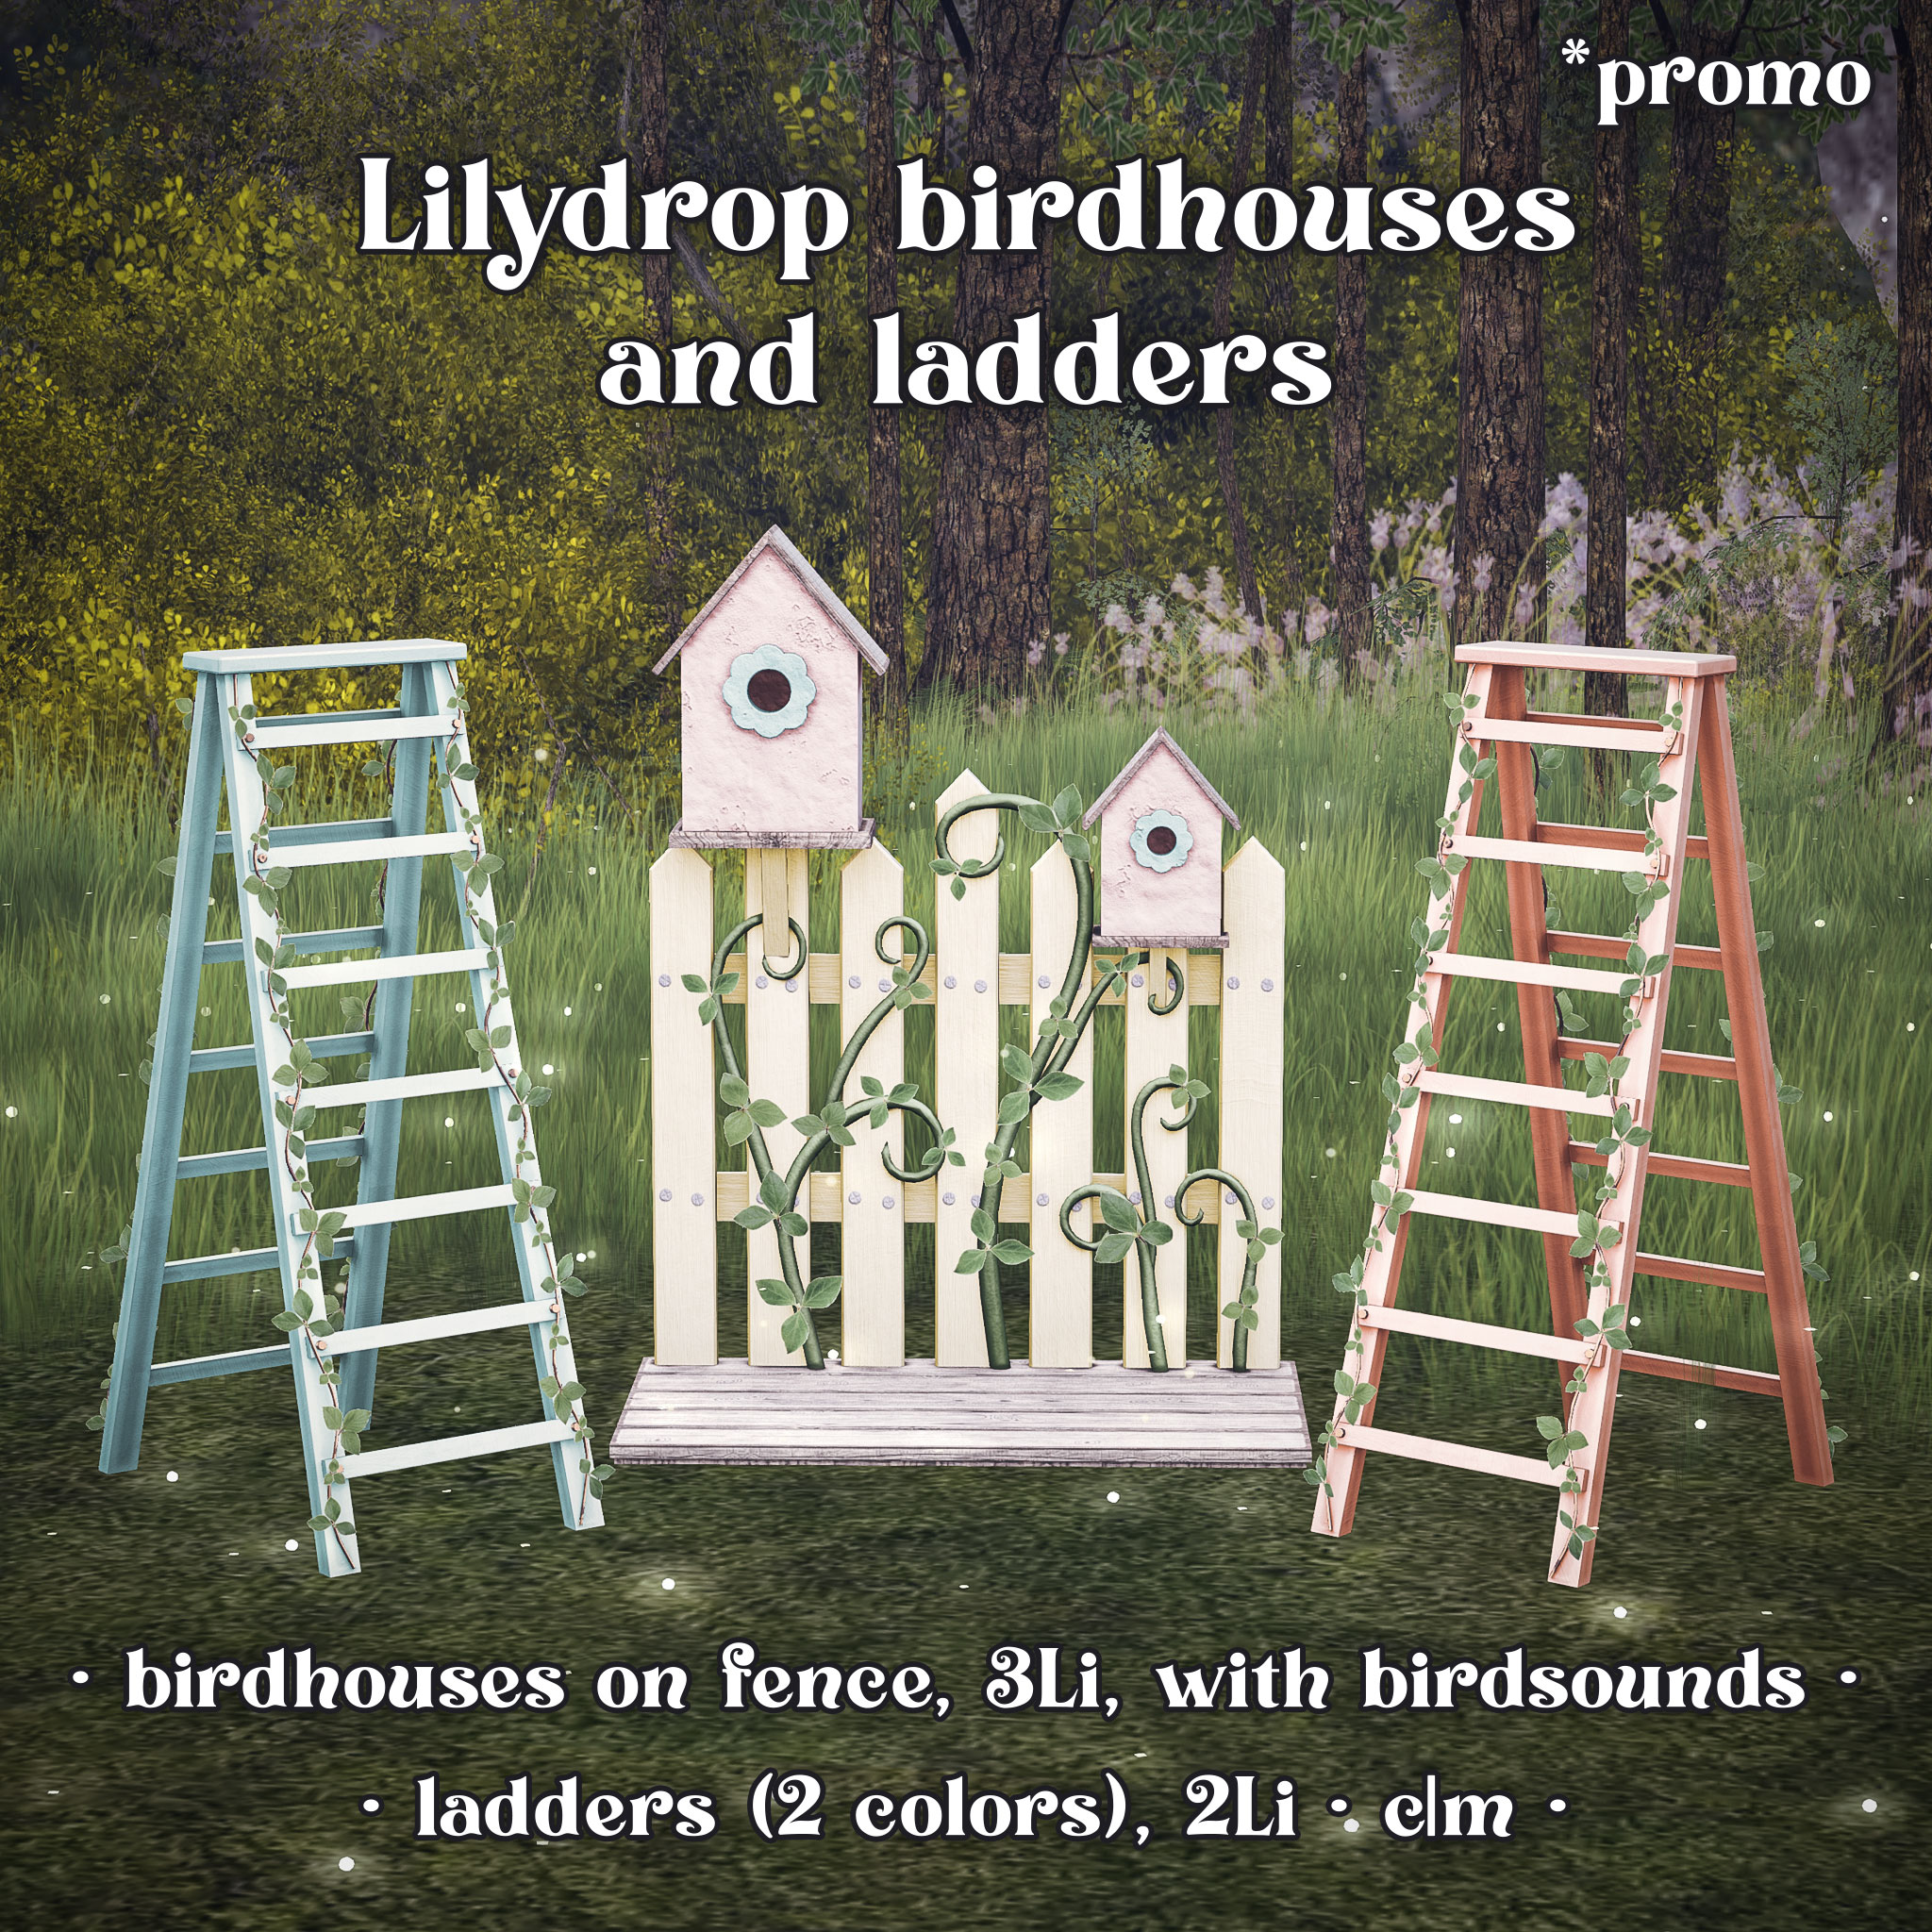 Raindale – Lilydrop Birdhouses & Ladders